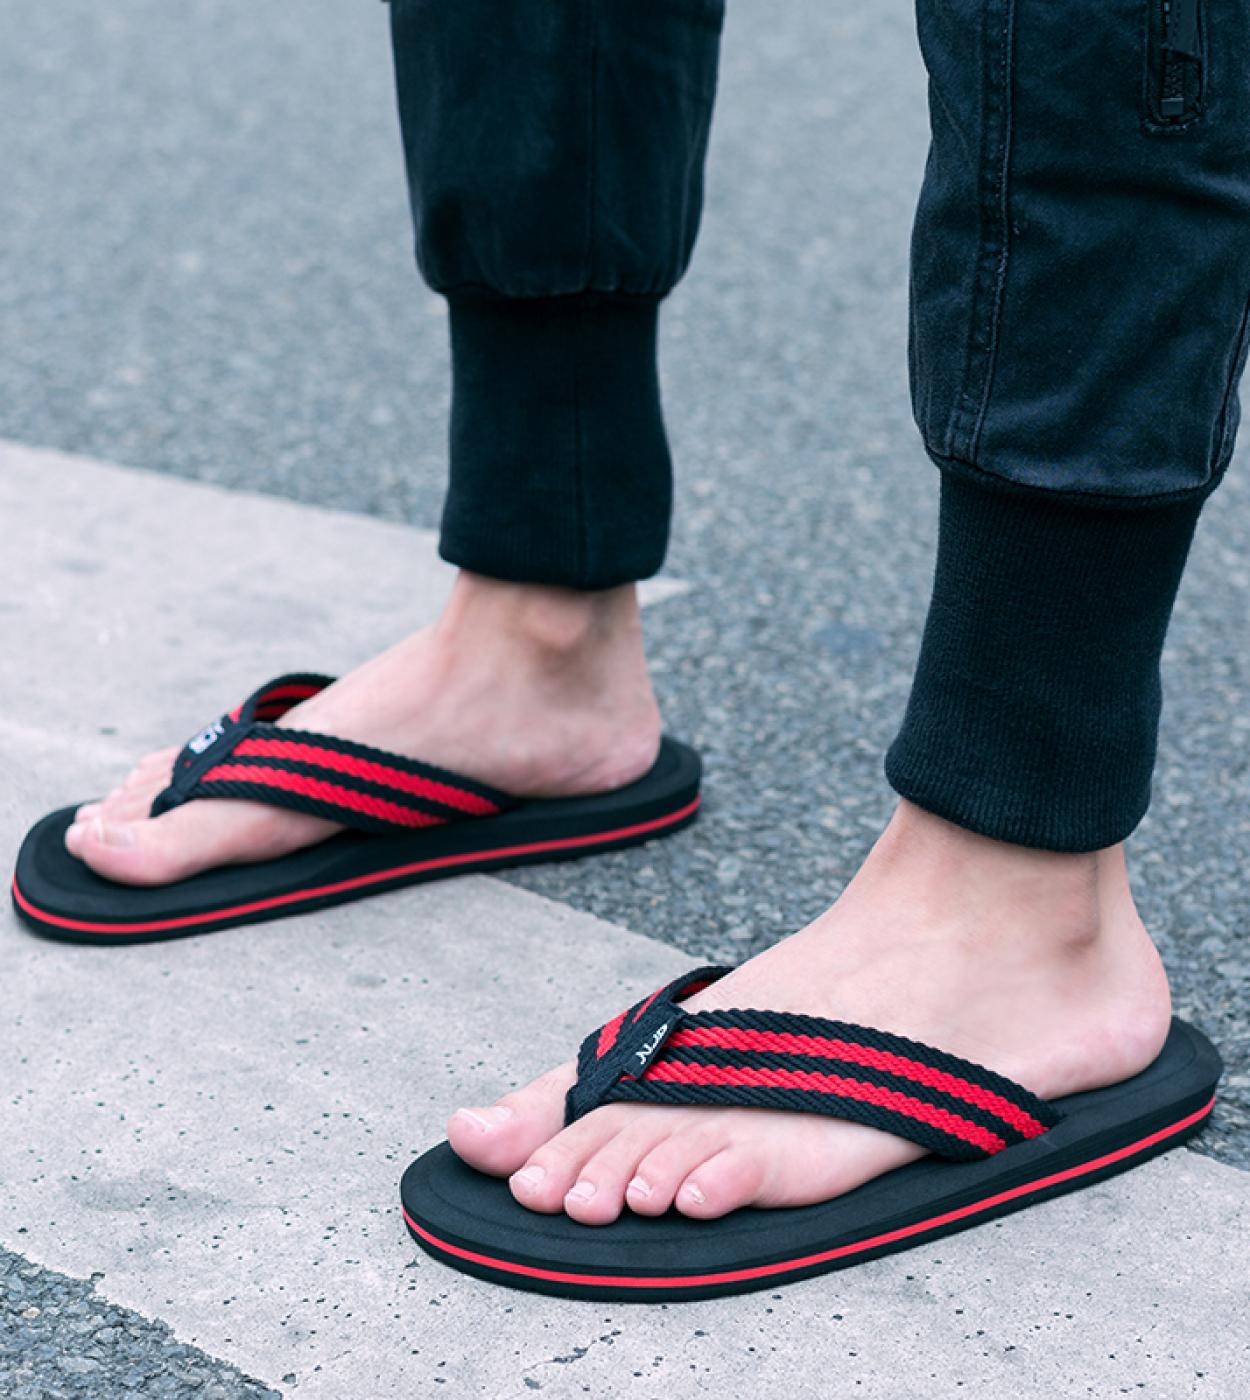 العلامة التجارية الوجه يتخبط حذاء رجالي الصيف صنادل أرضية الرجال صنادل شاطئ عادية نعال مريحة عالية الجودة حذاء الرجال كبير